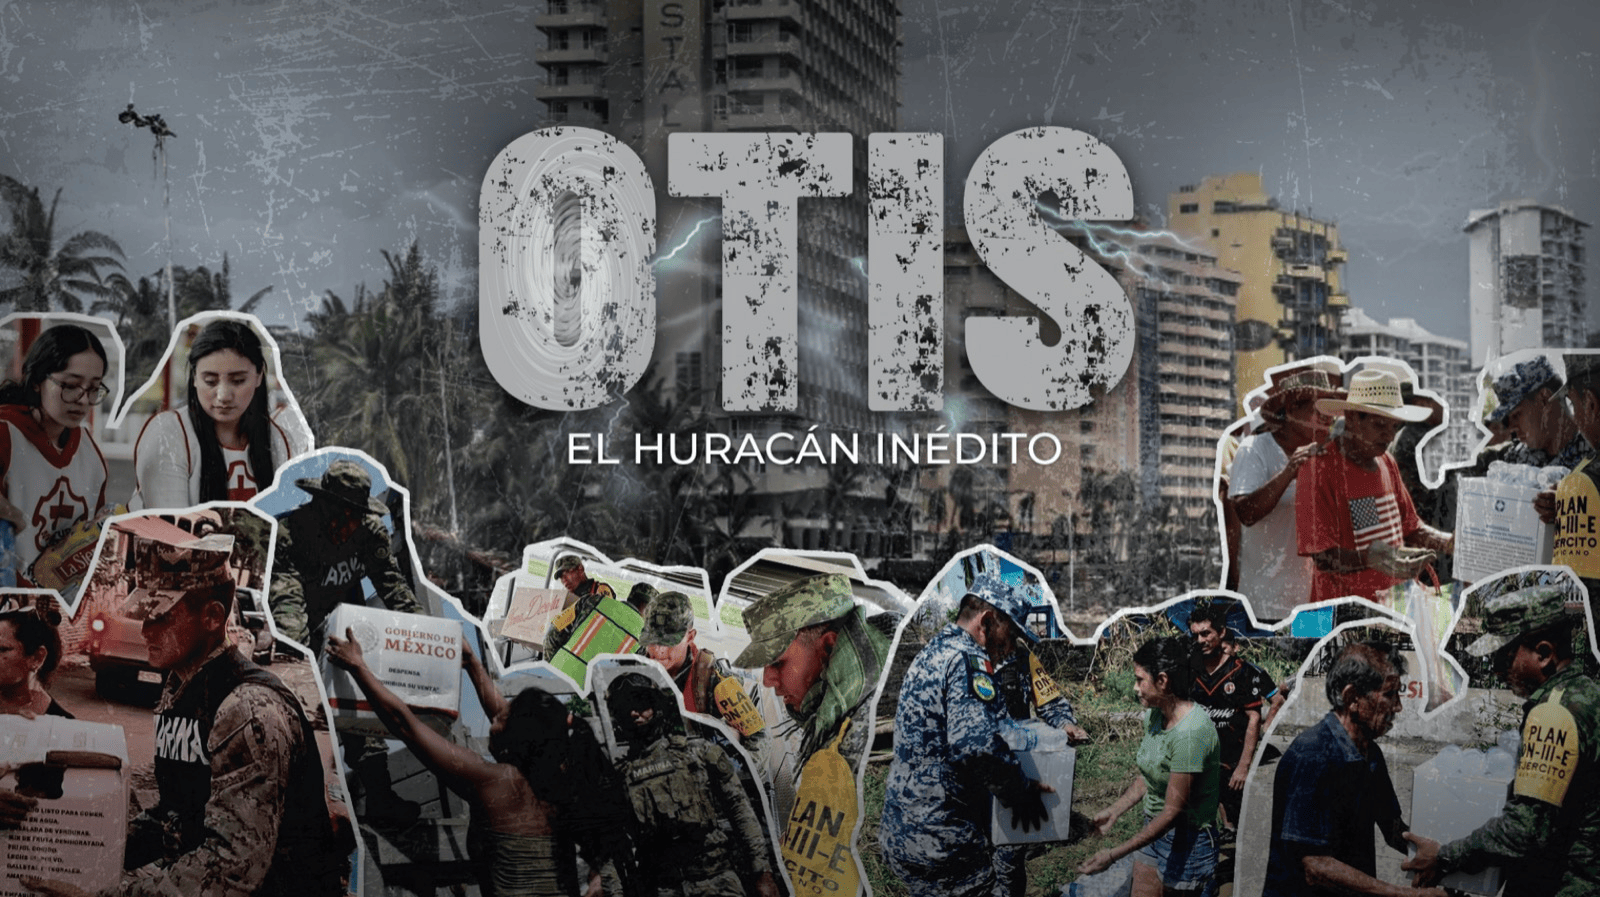 Otis: El Huracán Inédito